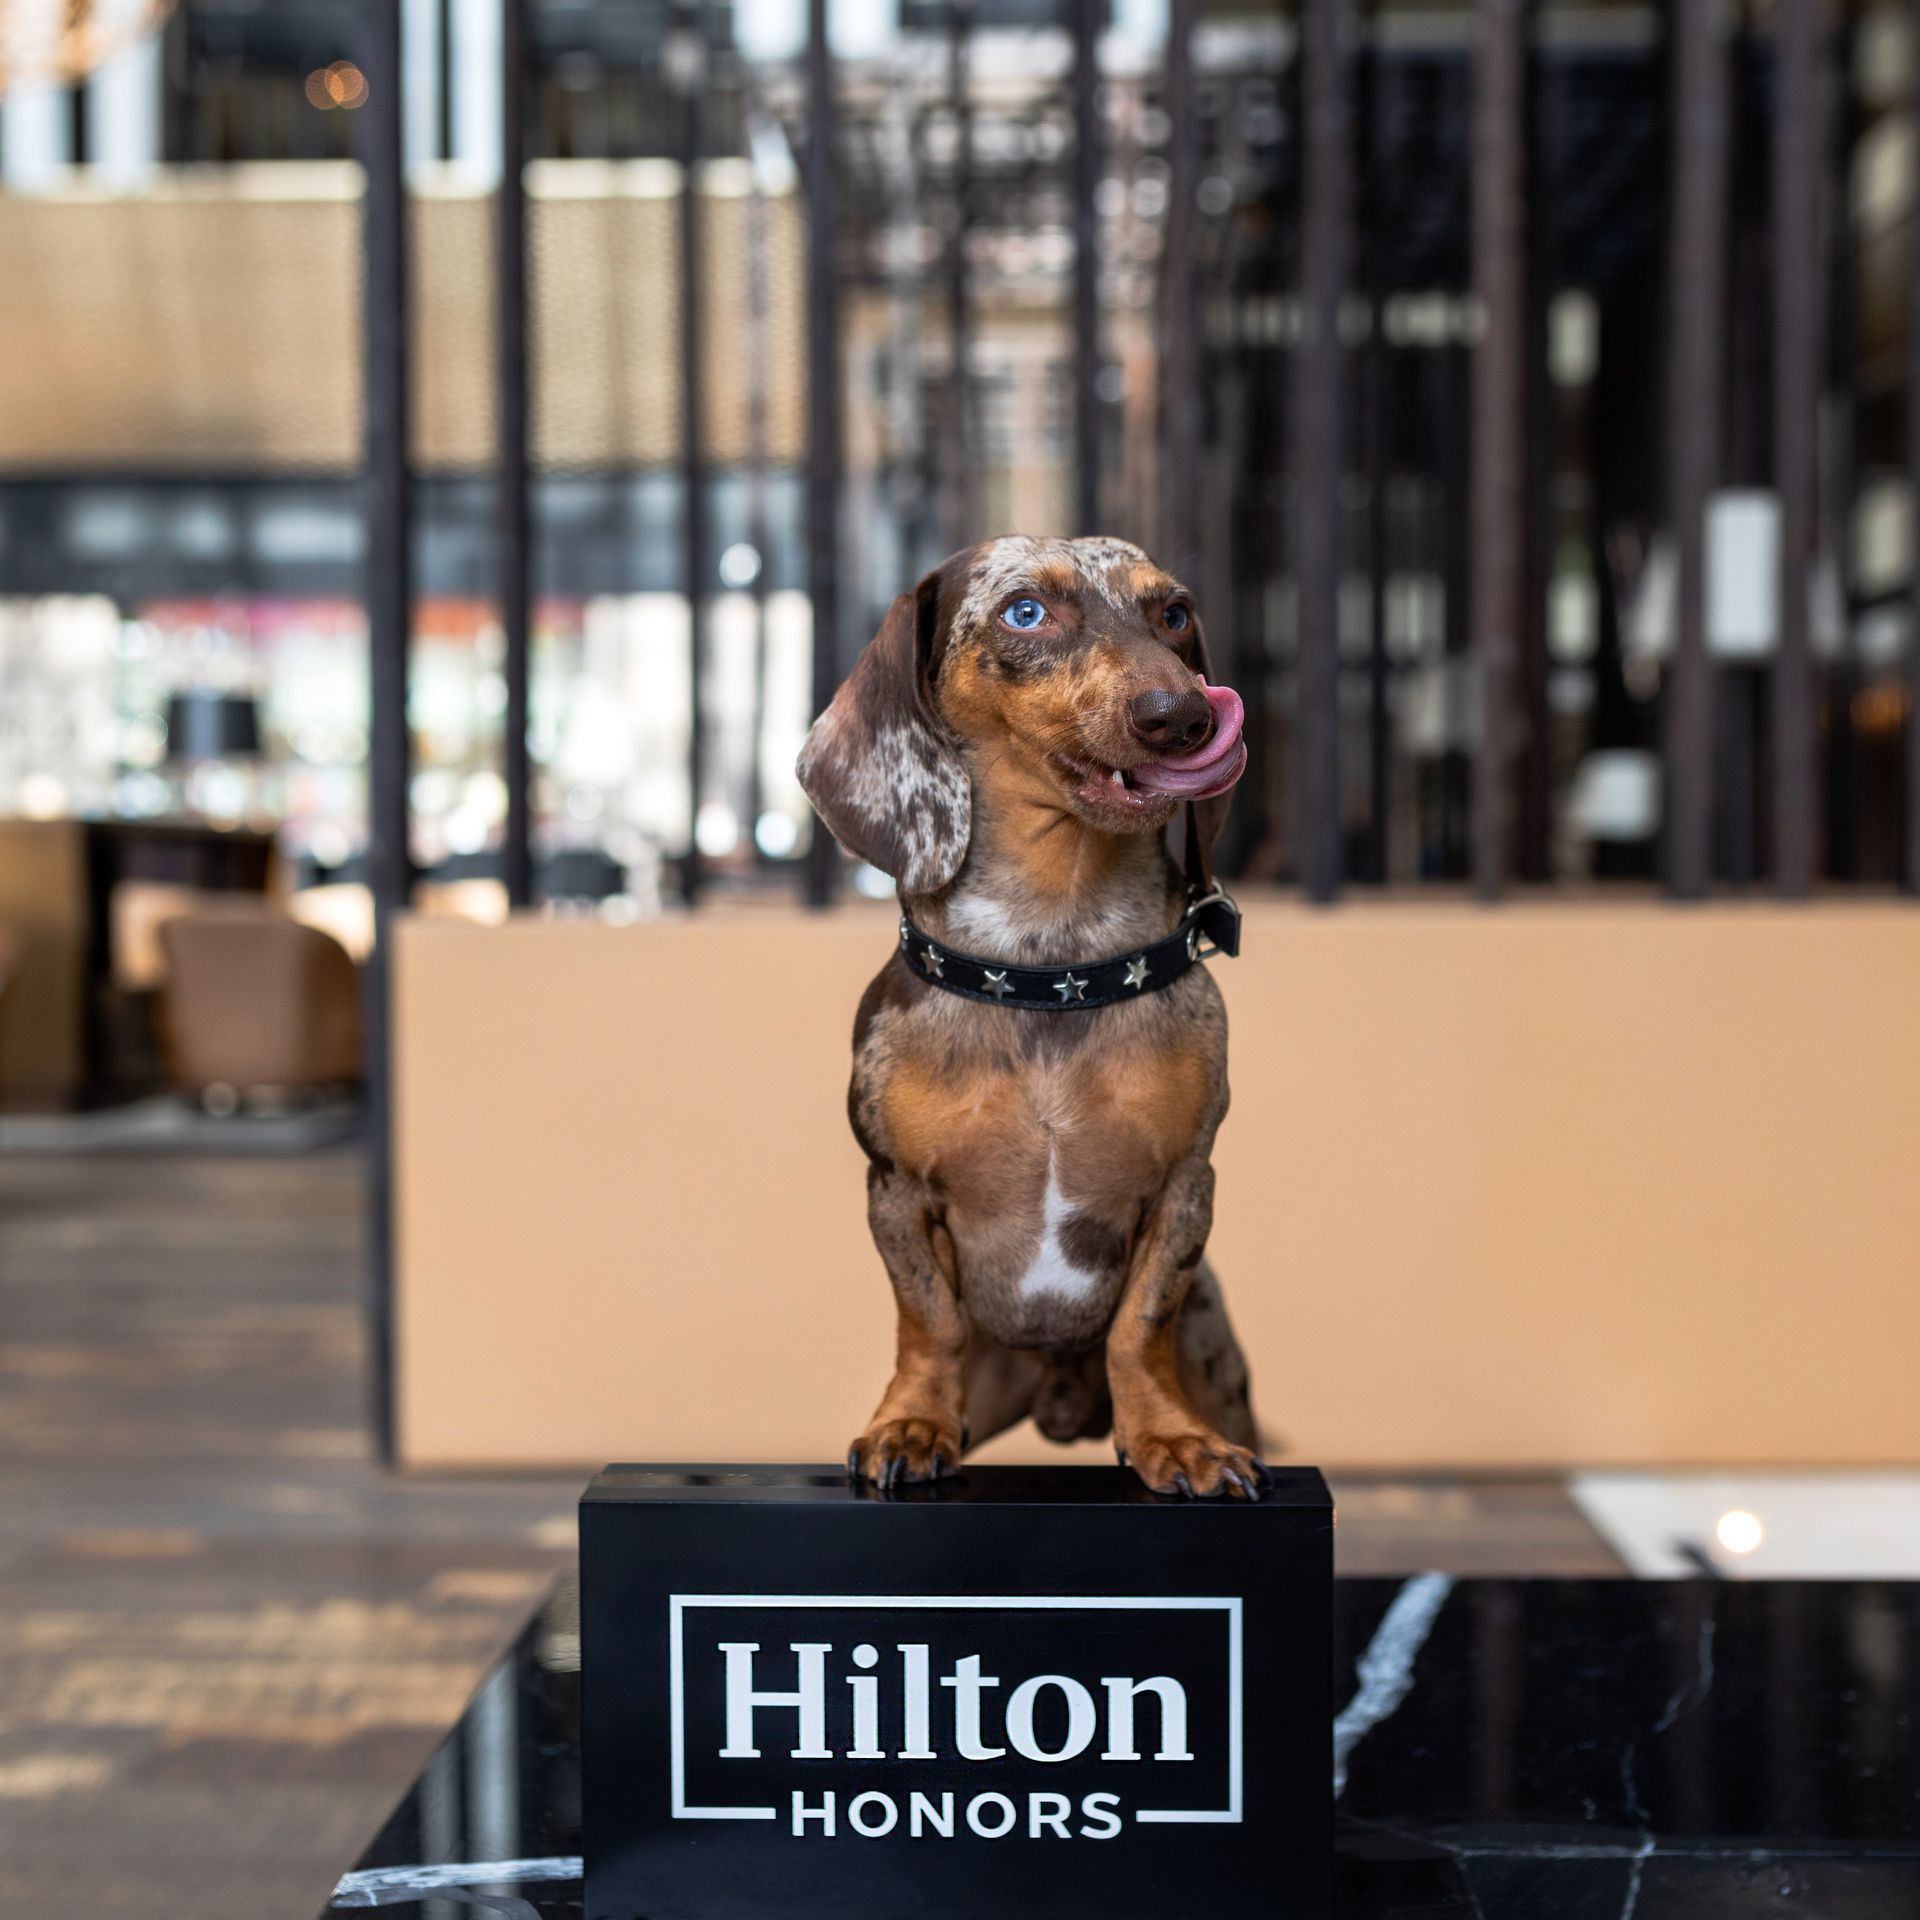 Un perro salchicha está sentado encima de un cartel de honores de Hilton.